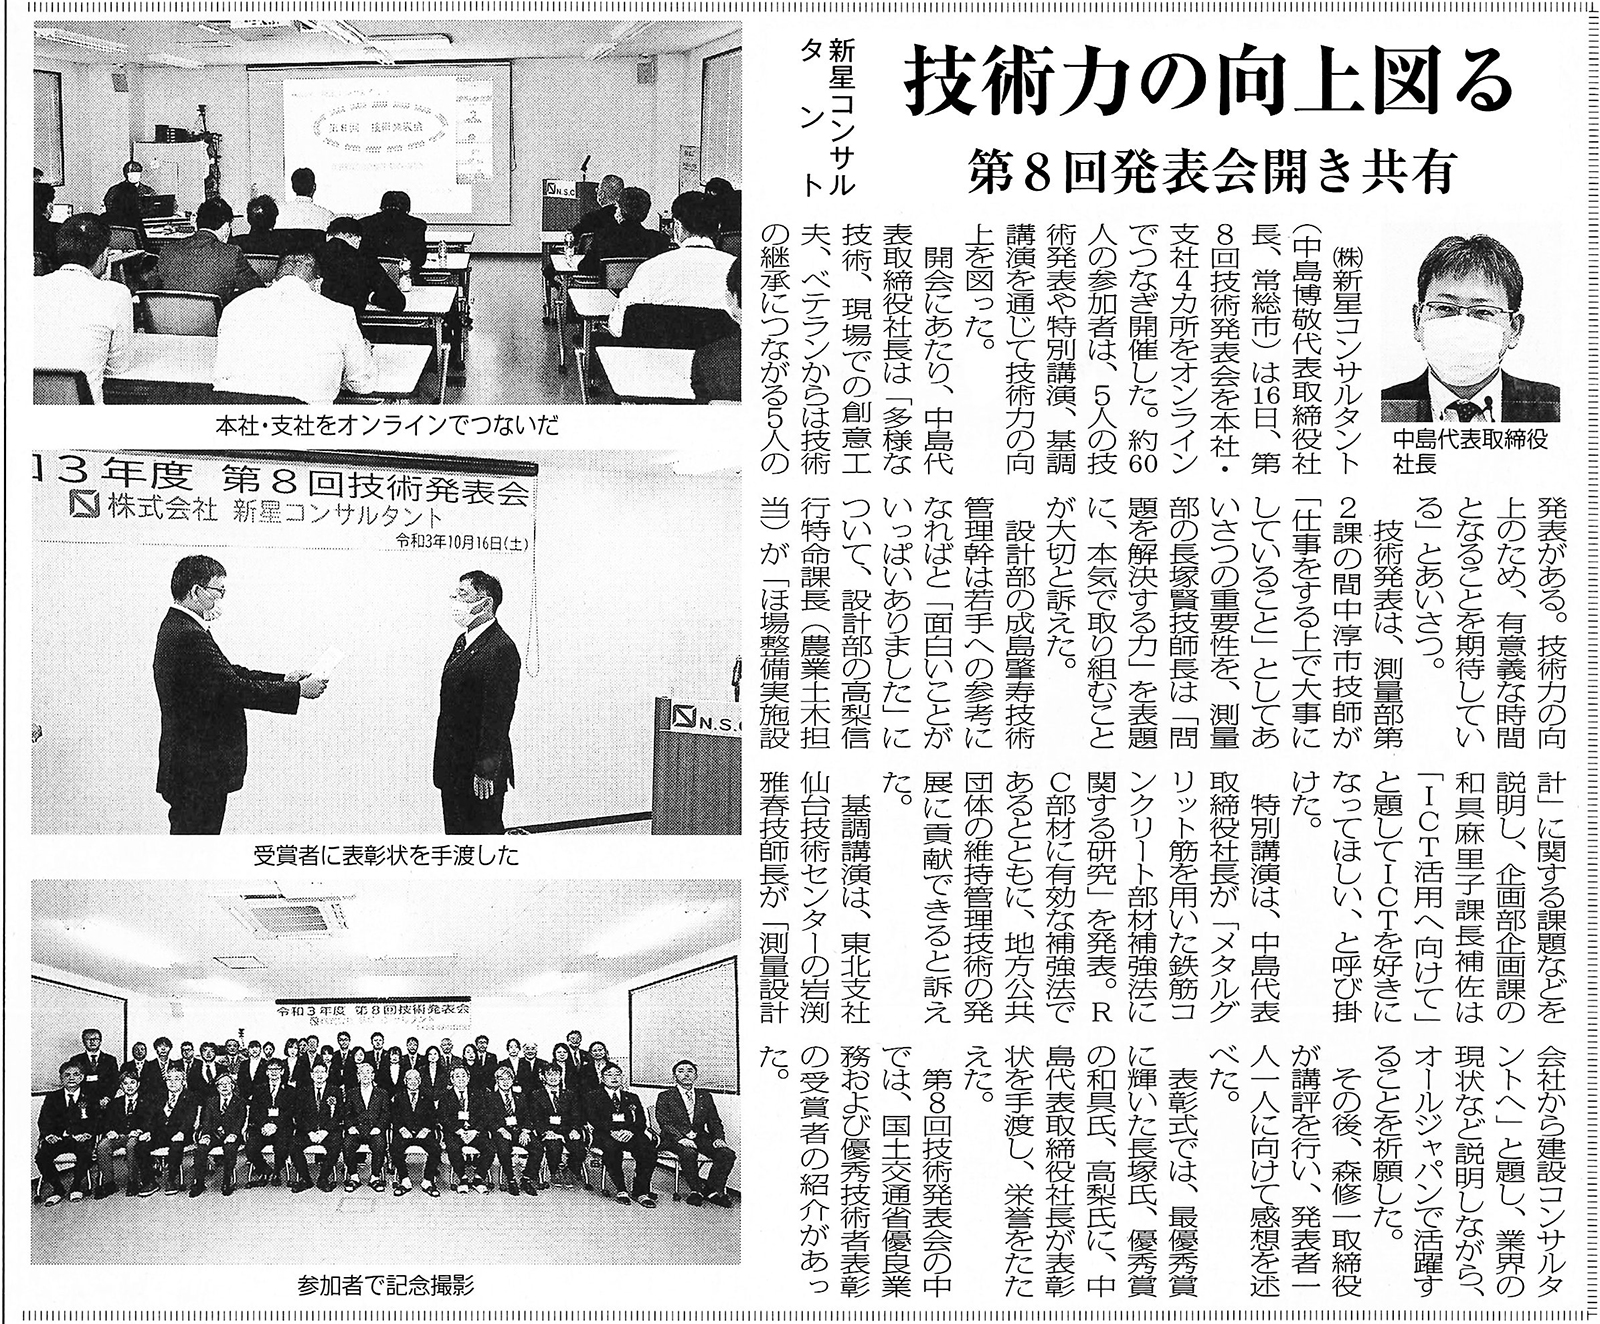 また、今回の技術発表会についての記事が10月20日の日本工業経済新聞に掲載されました。